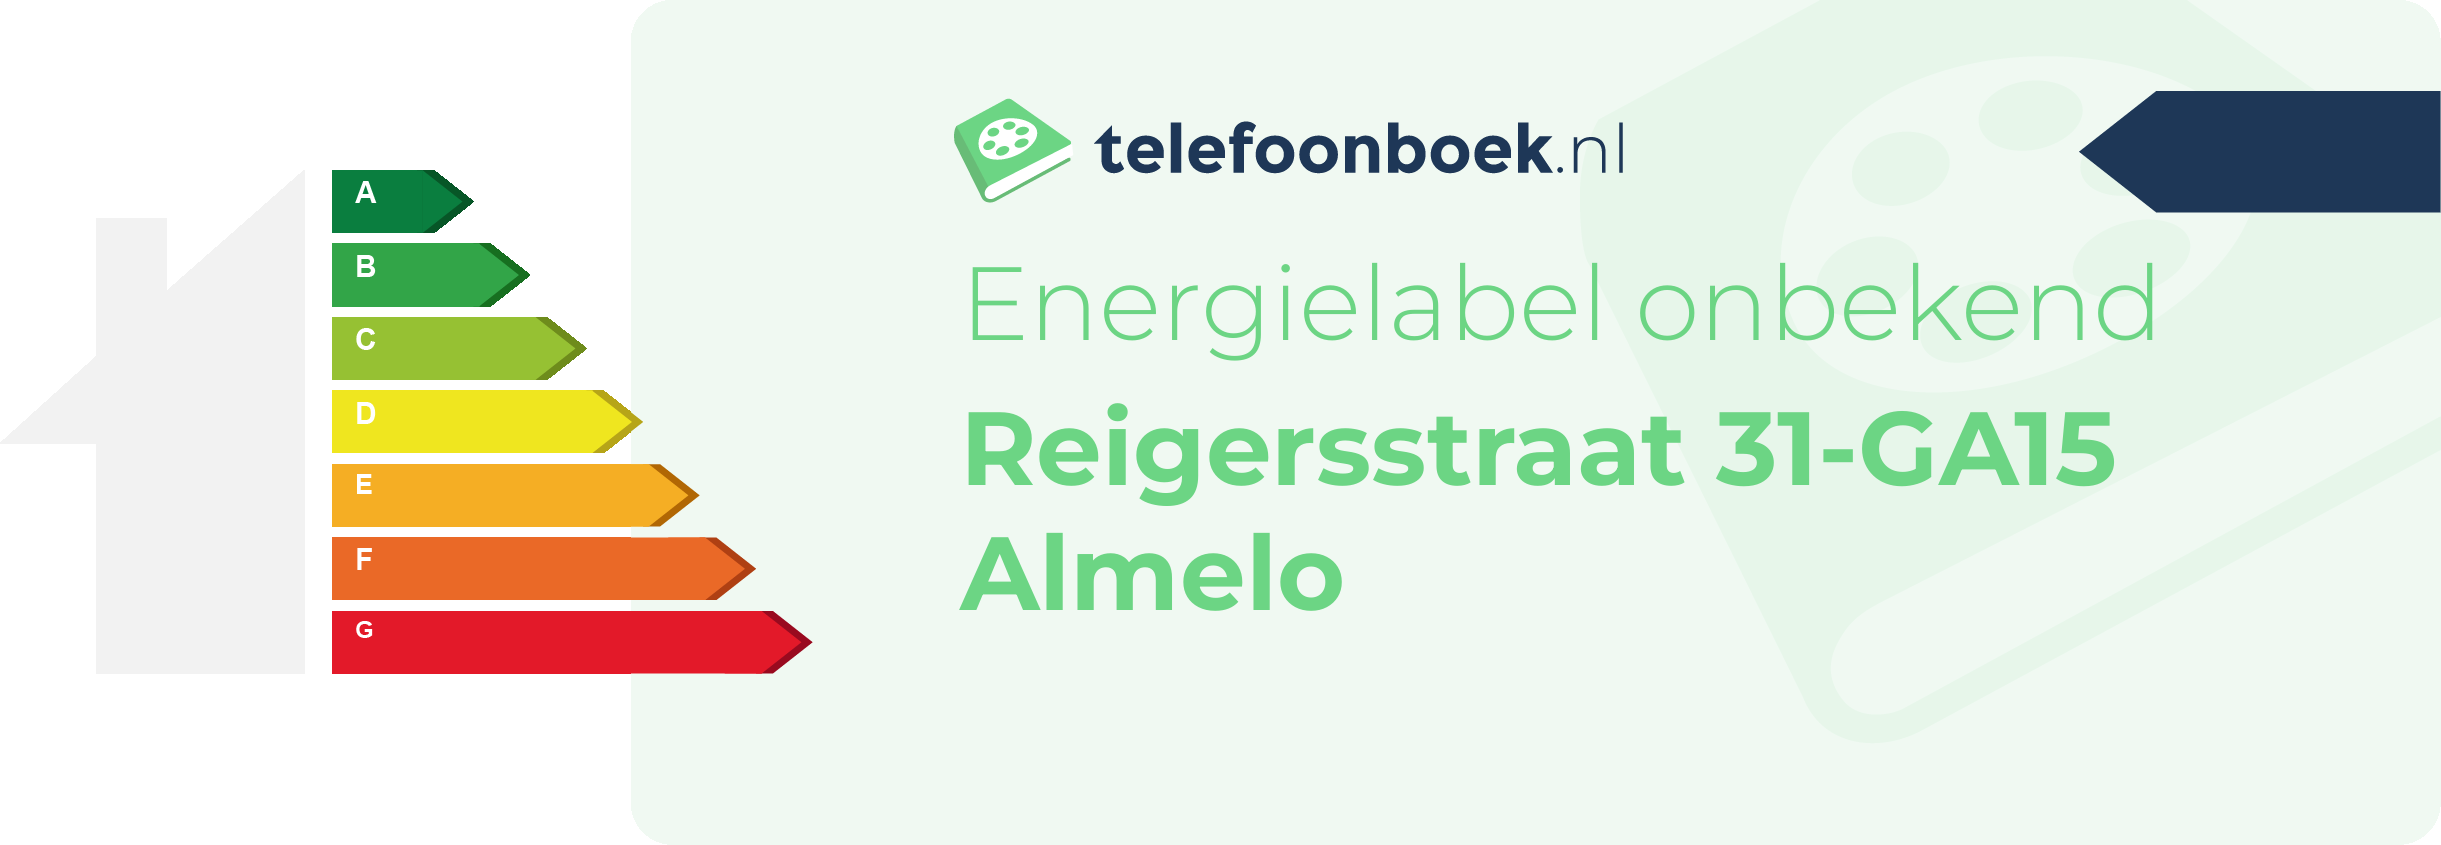 Energielabel Reigersstraat 31-GA15 Almelo